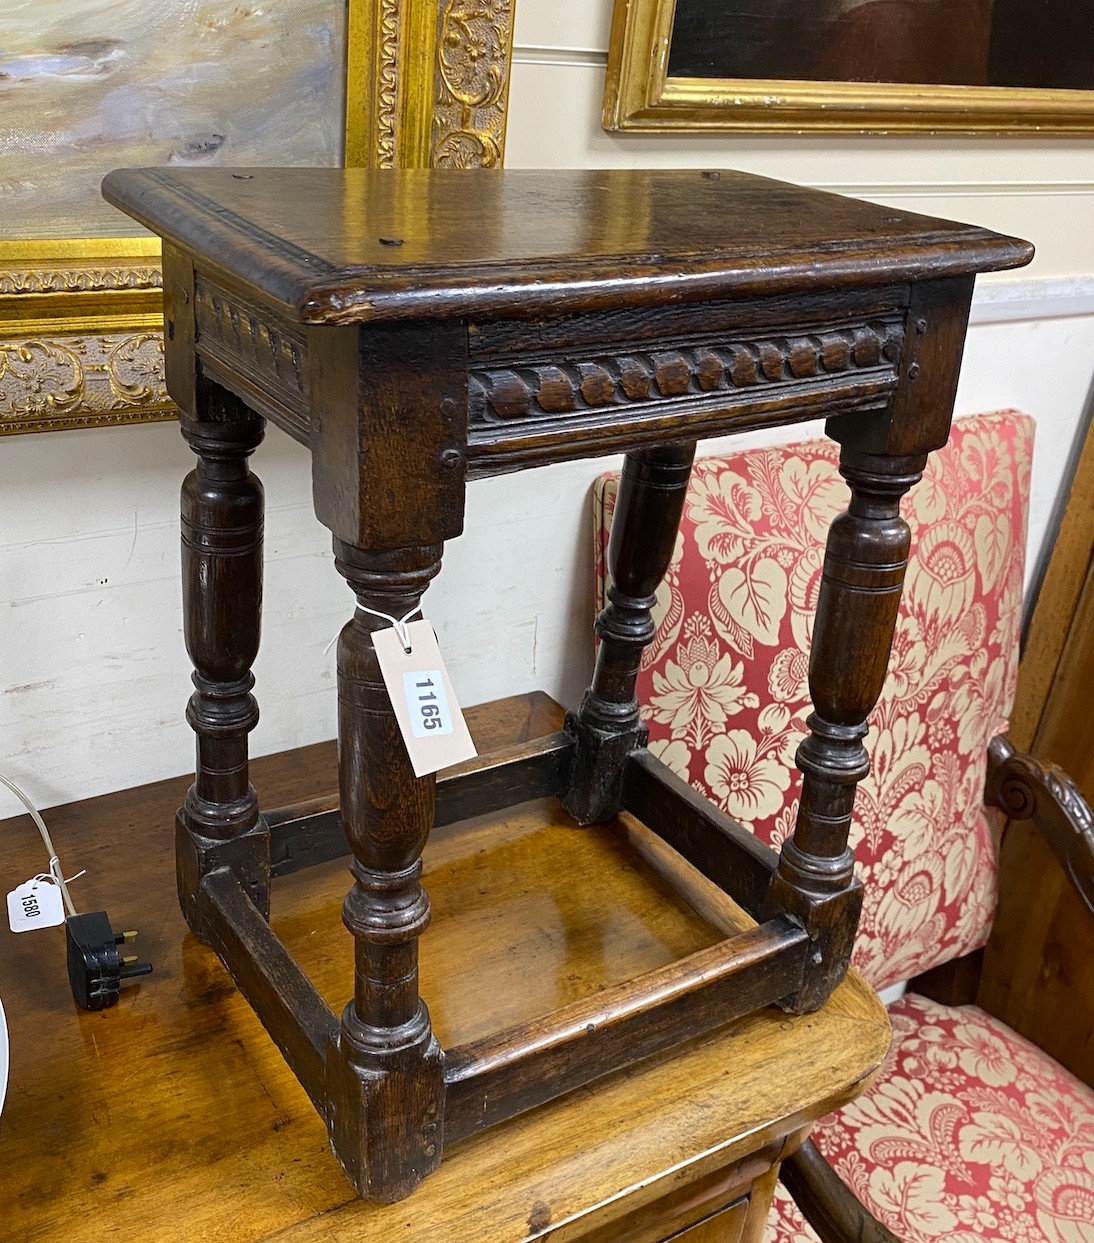 An 18th century rectangular oak joint stool, width 44cm, depth 26cm, height 53cm